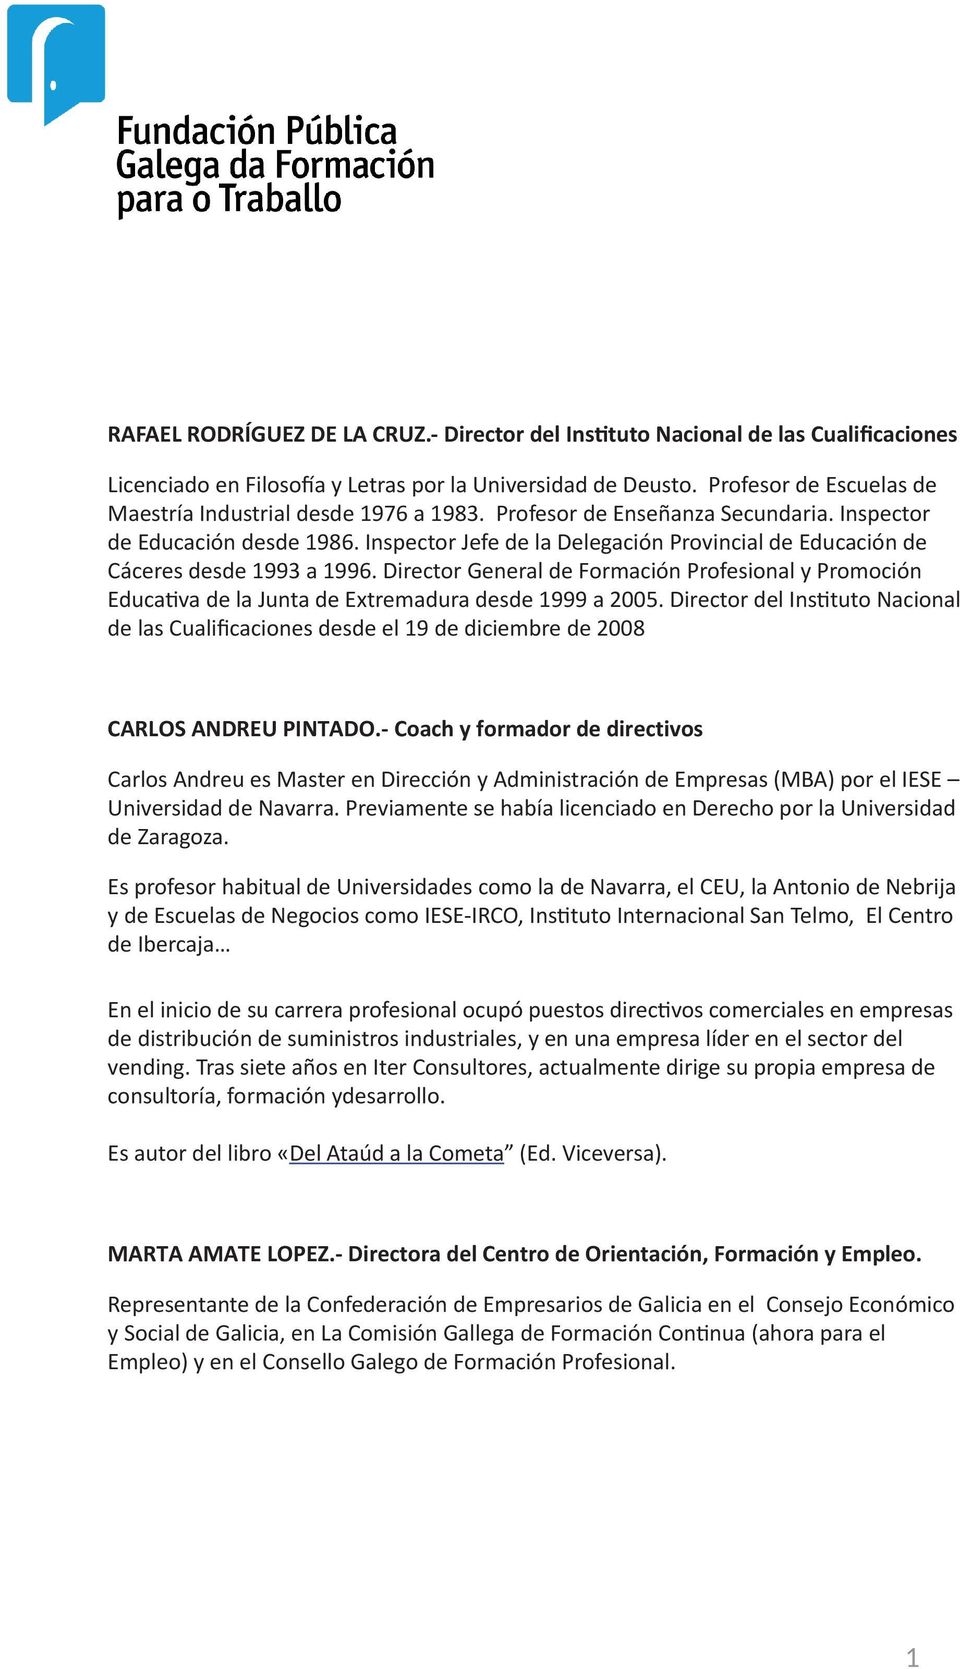 Inspector Jefe de la Delegación Provincial de Educación de Cáceres desde 1993 a 1996. Director General de Formación Profesional y Promoción Educativa de la Junta de Extremadura desde 1999 a 2005.